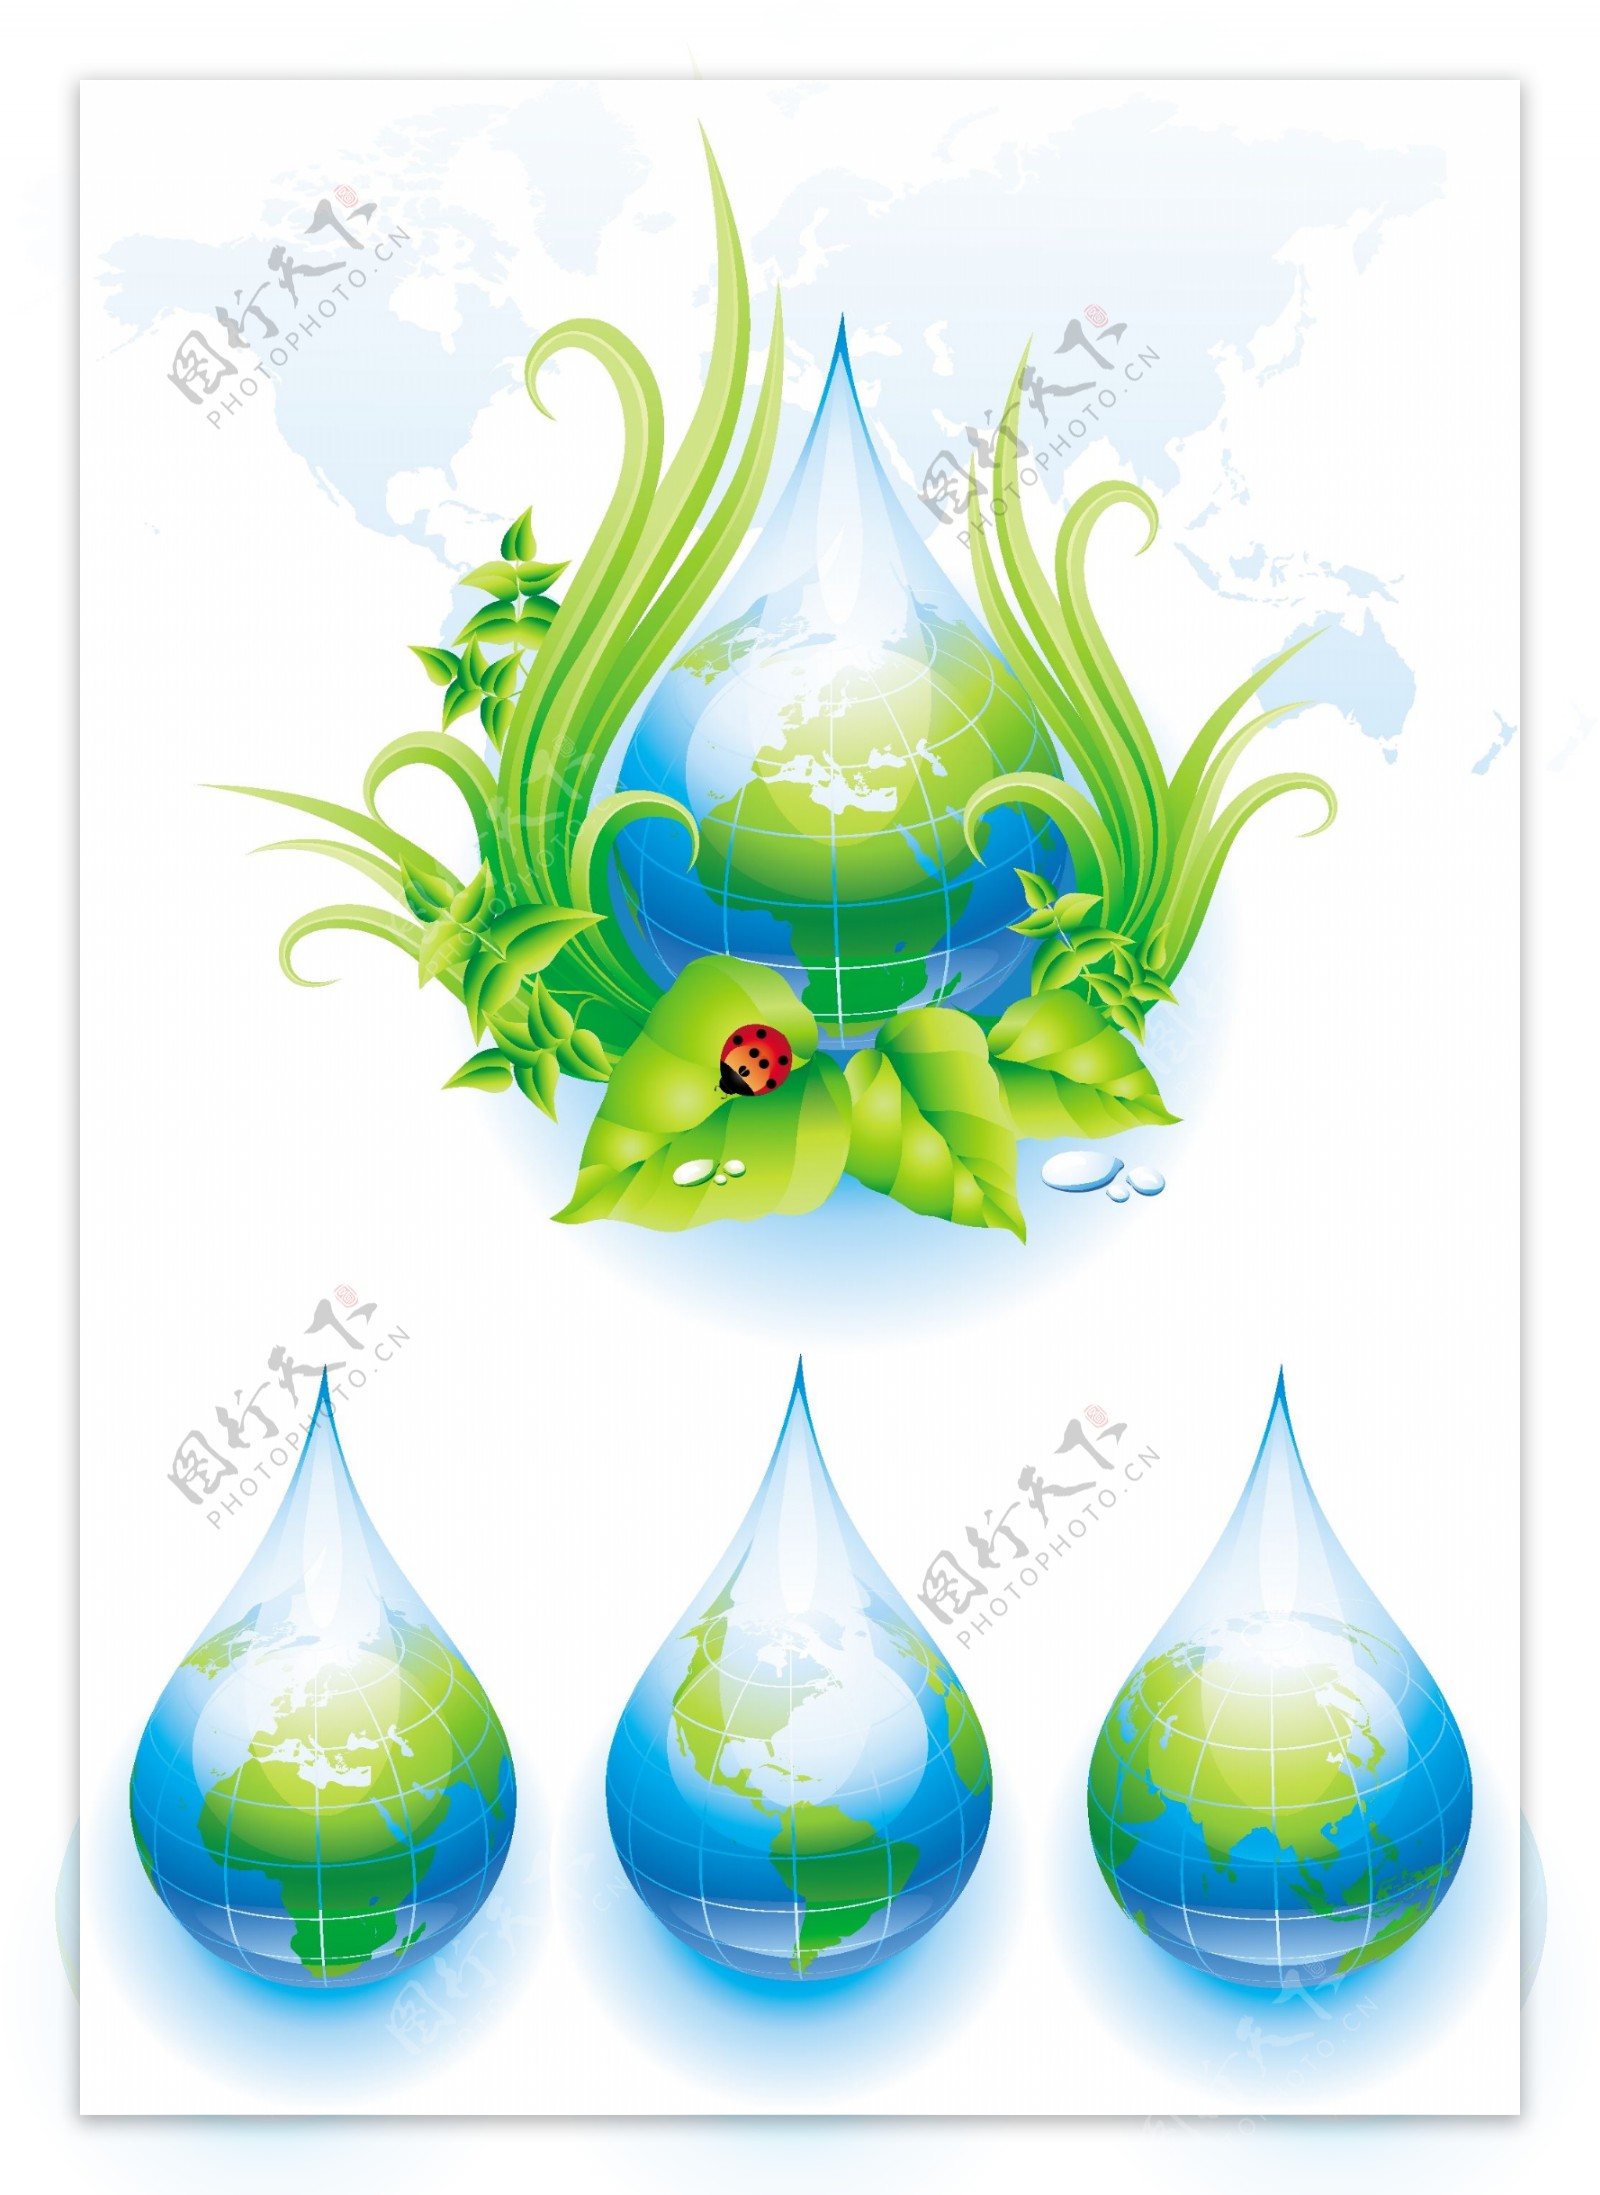 地球与水资源环保素材